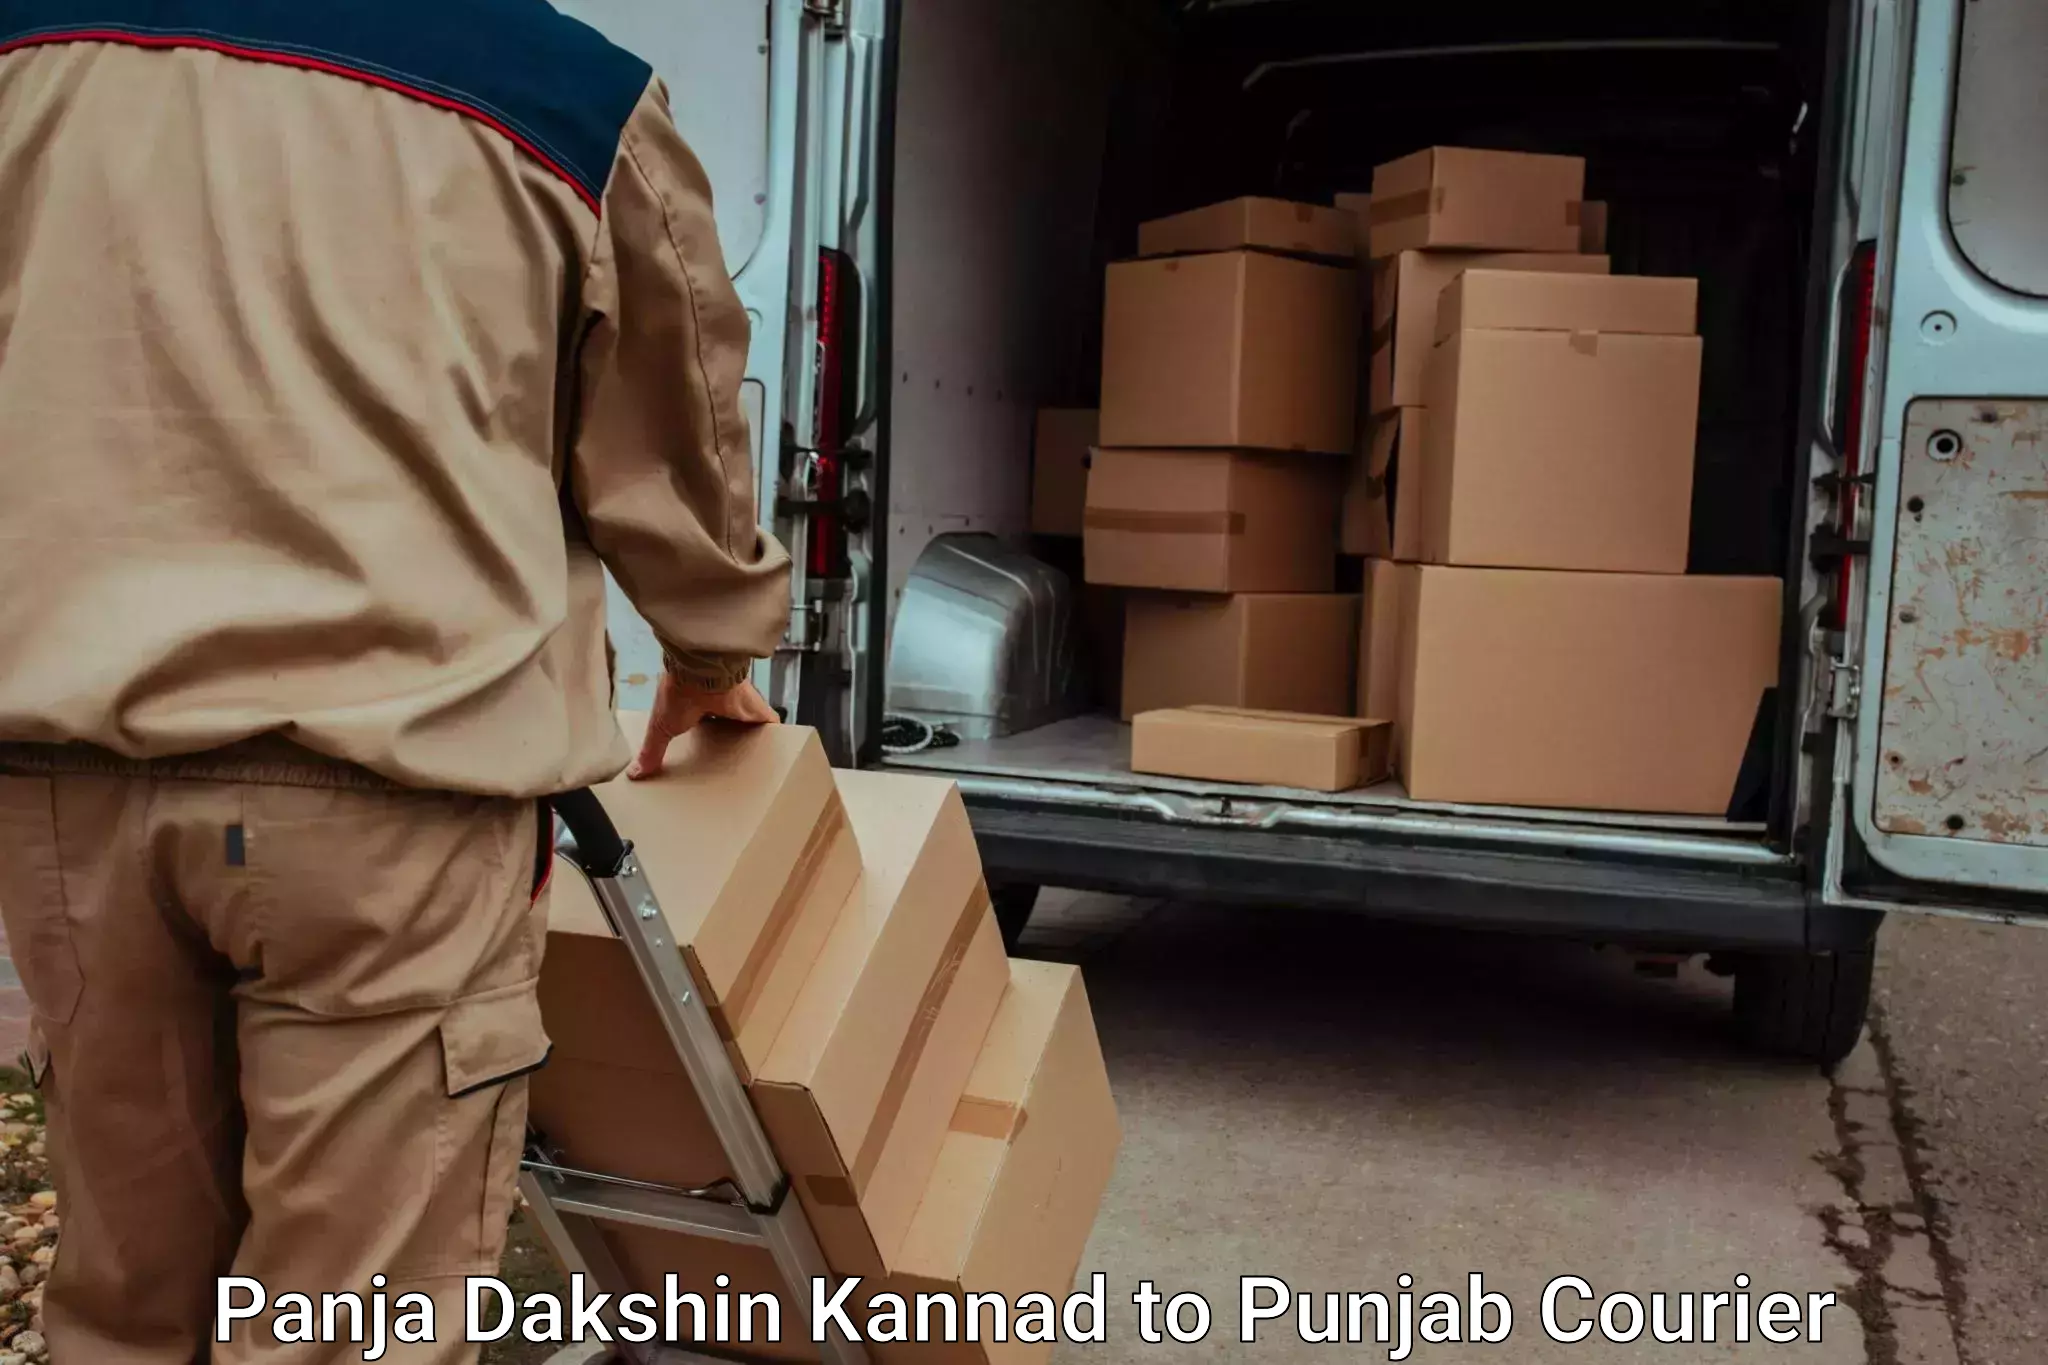 Baggage shipping schedule in Panja Dakshin Kannad to Punjab